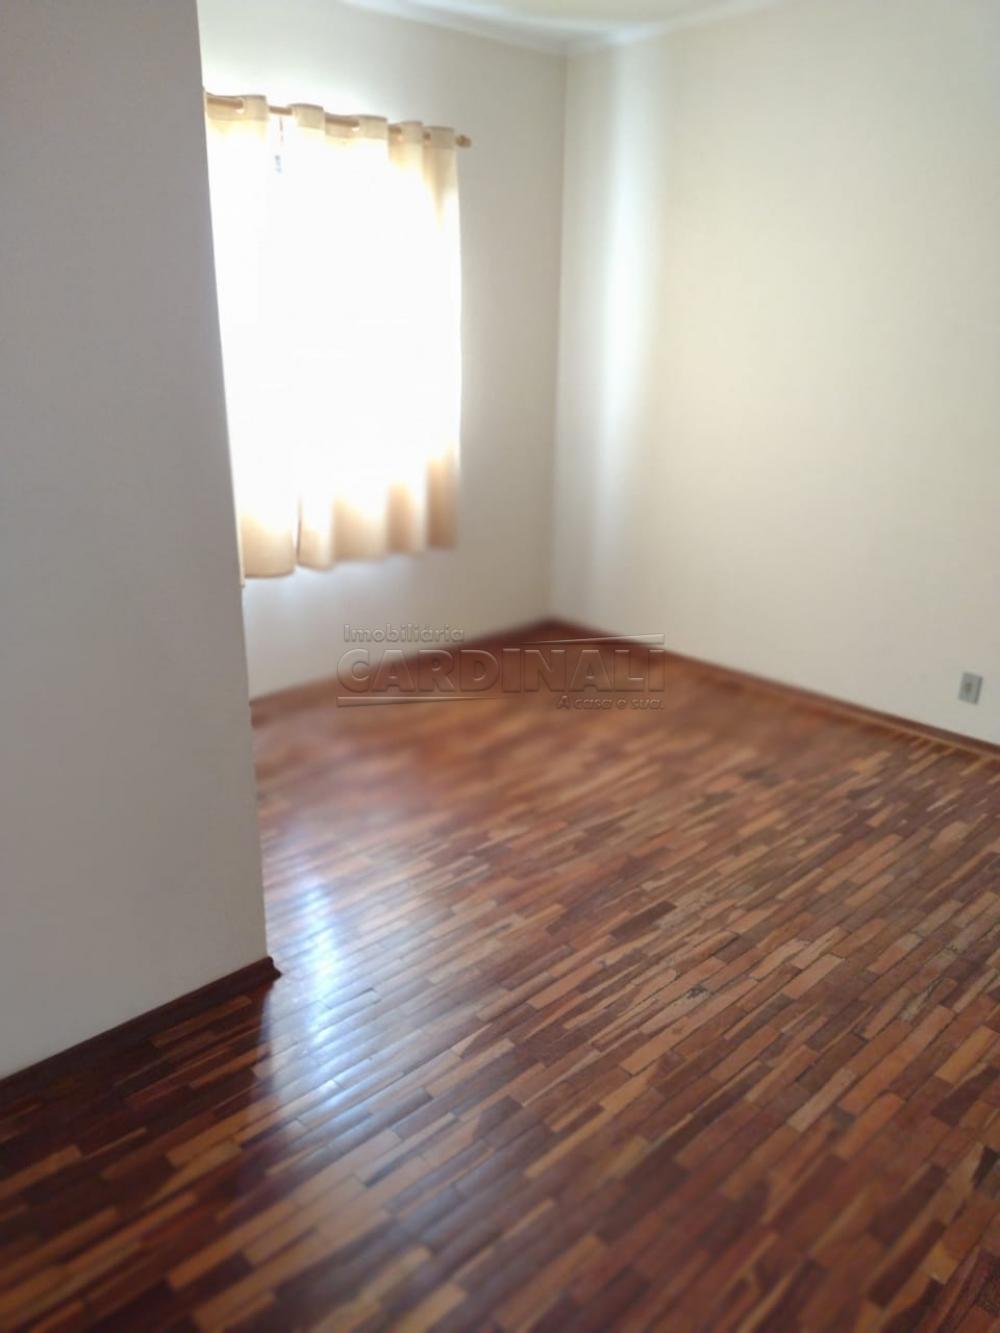 Comprar Apartamento / Padrão em São Carlos R$ 190.000,00 - Foto 12